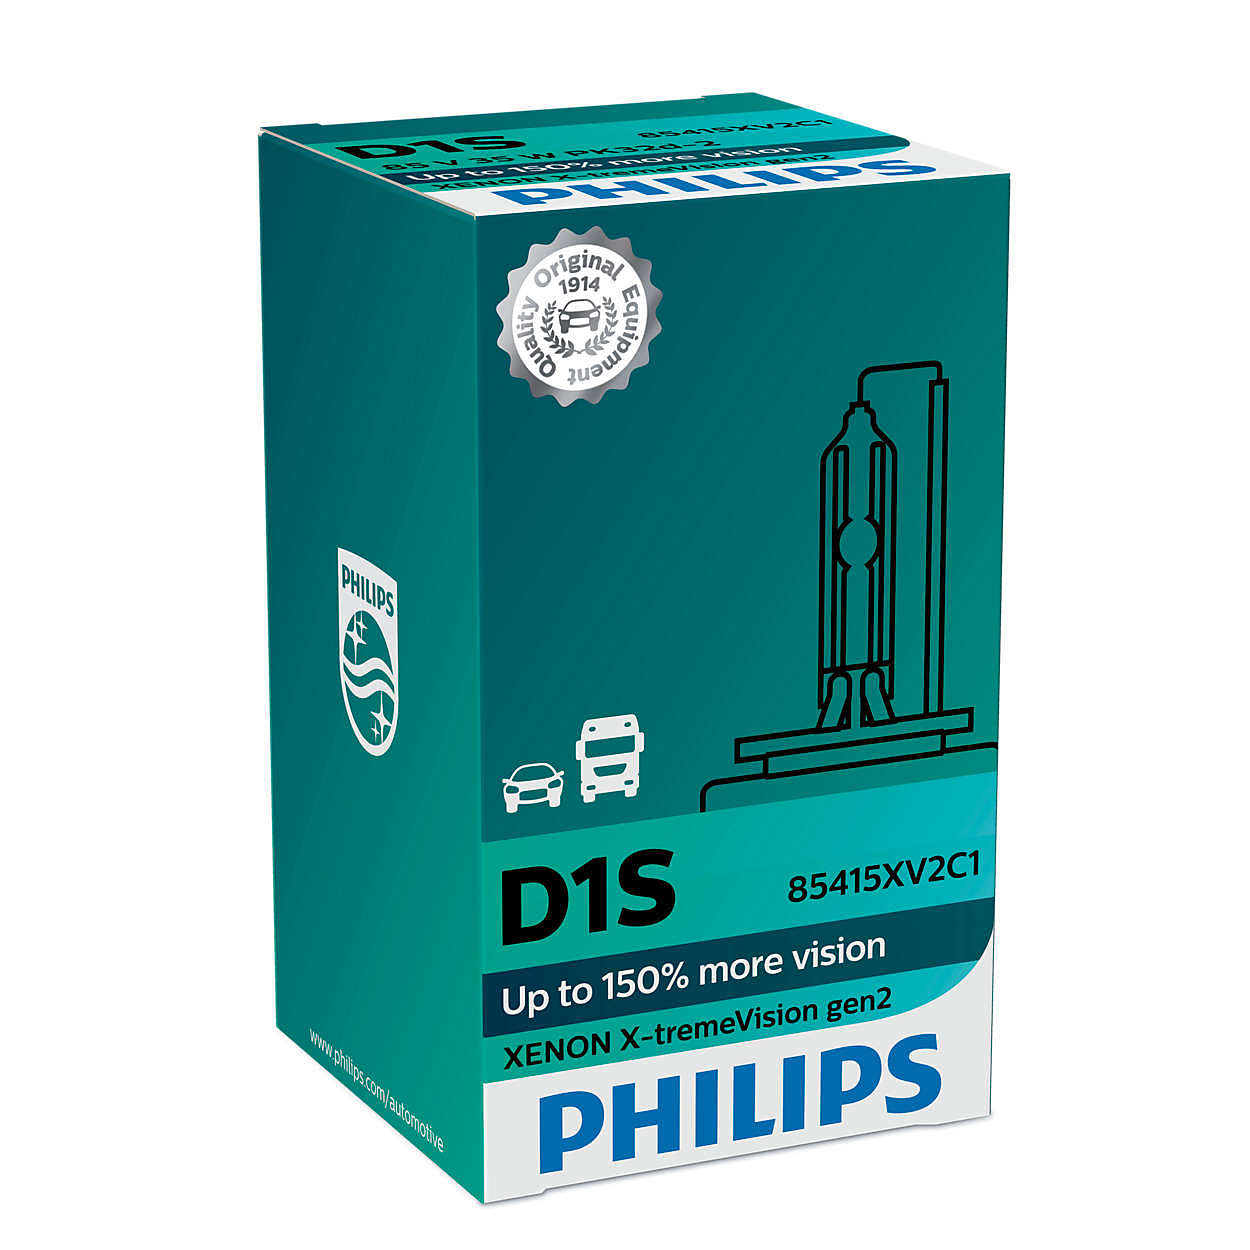 D1S Philips X-treme Vision Gen2 (+150%)